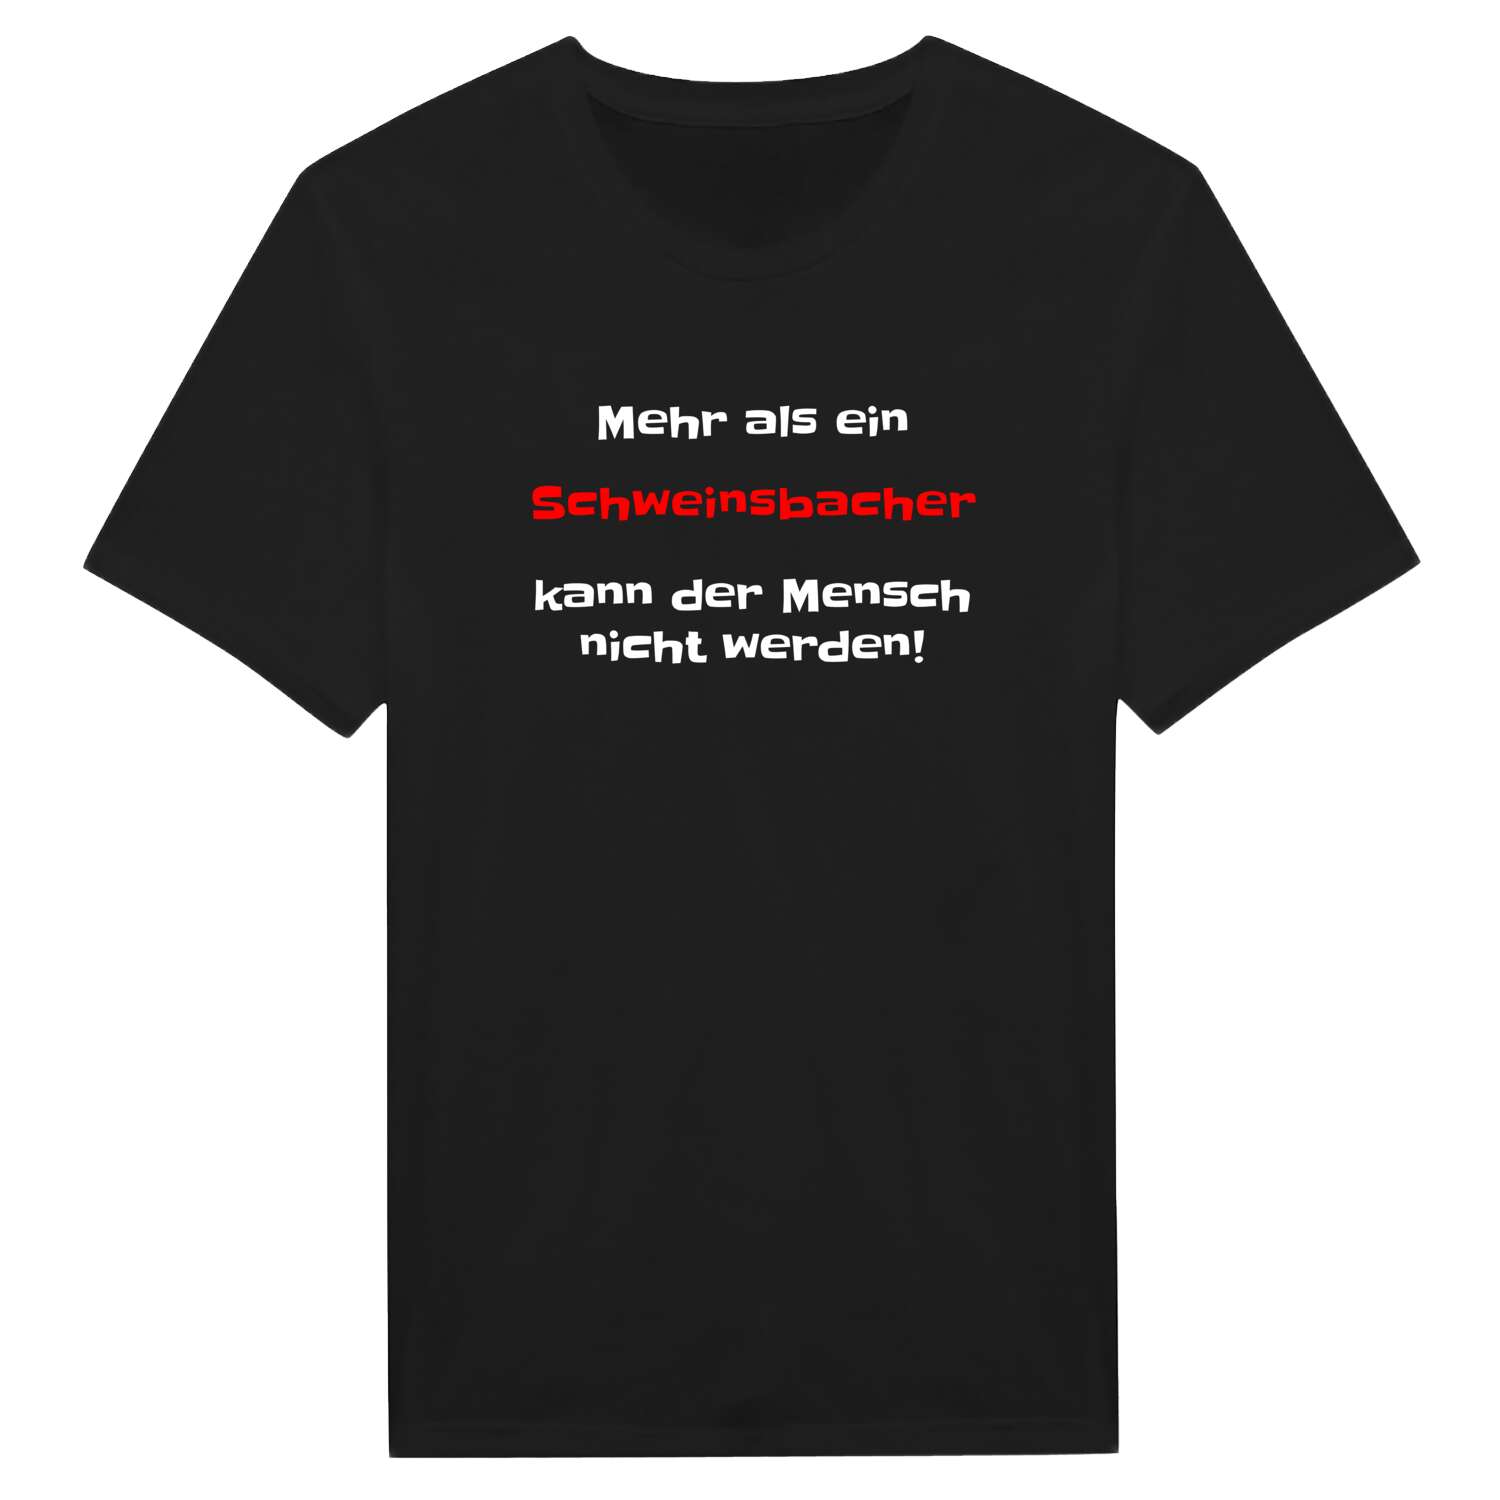 Schweinsbach T-Shirt »Mehr als ein«